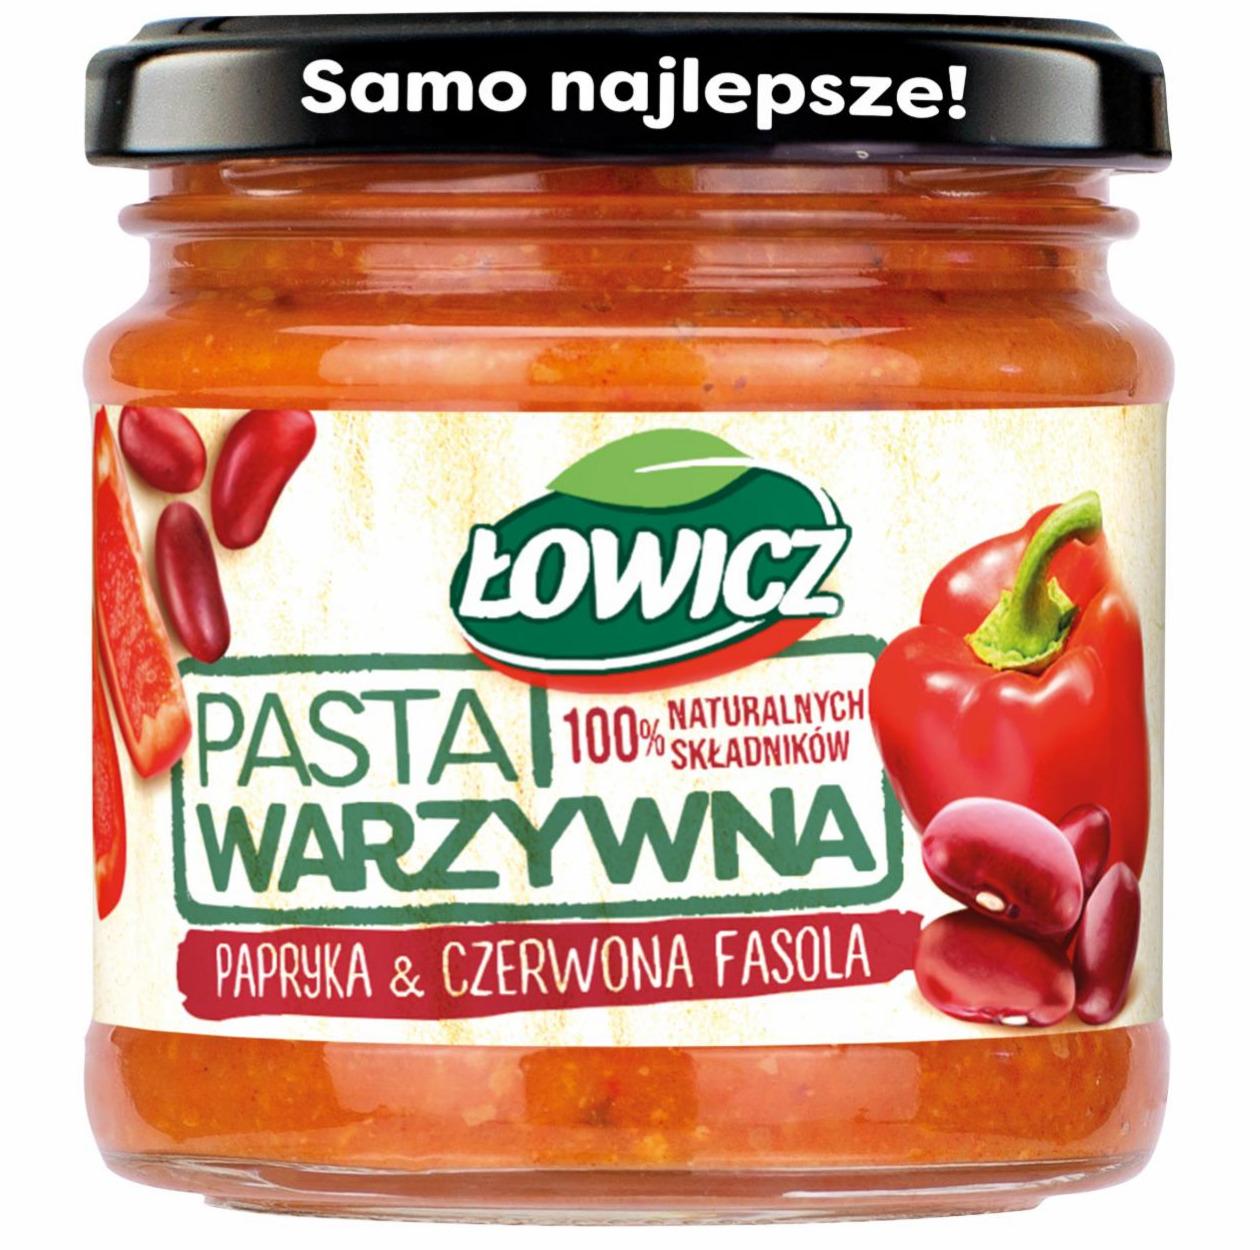 Fotografie - Pasta warzywna papryka & czerwona fasola Łowicz